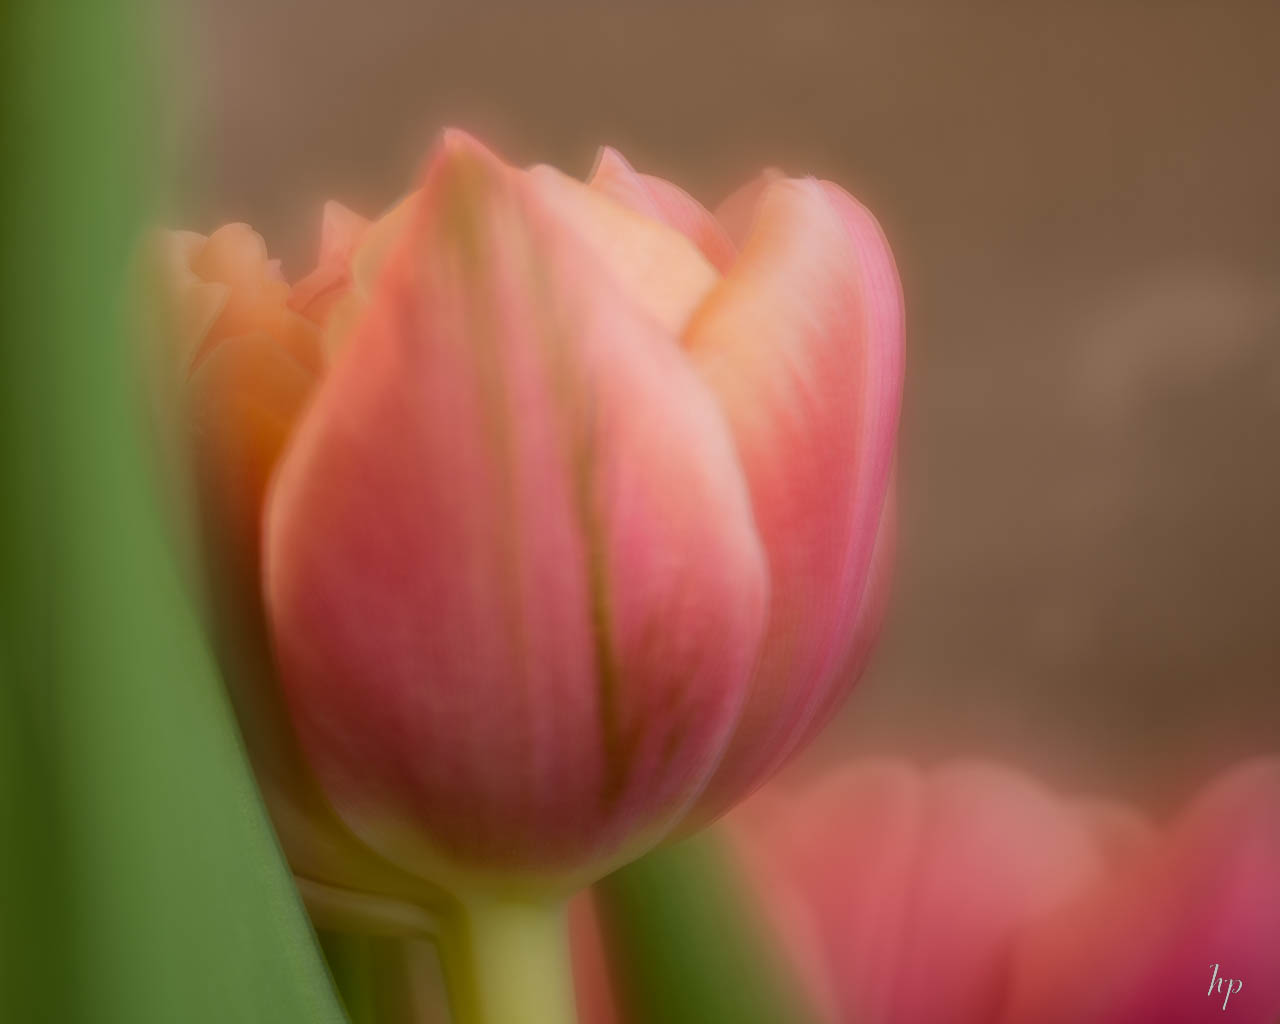 velvet tulips